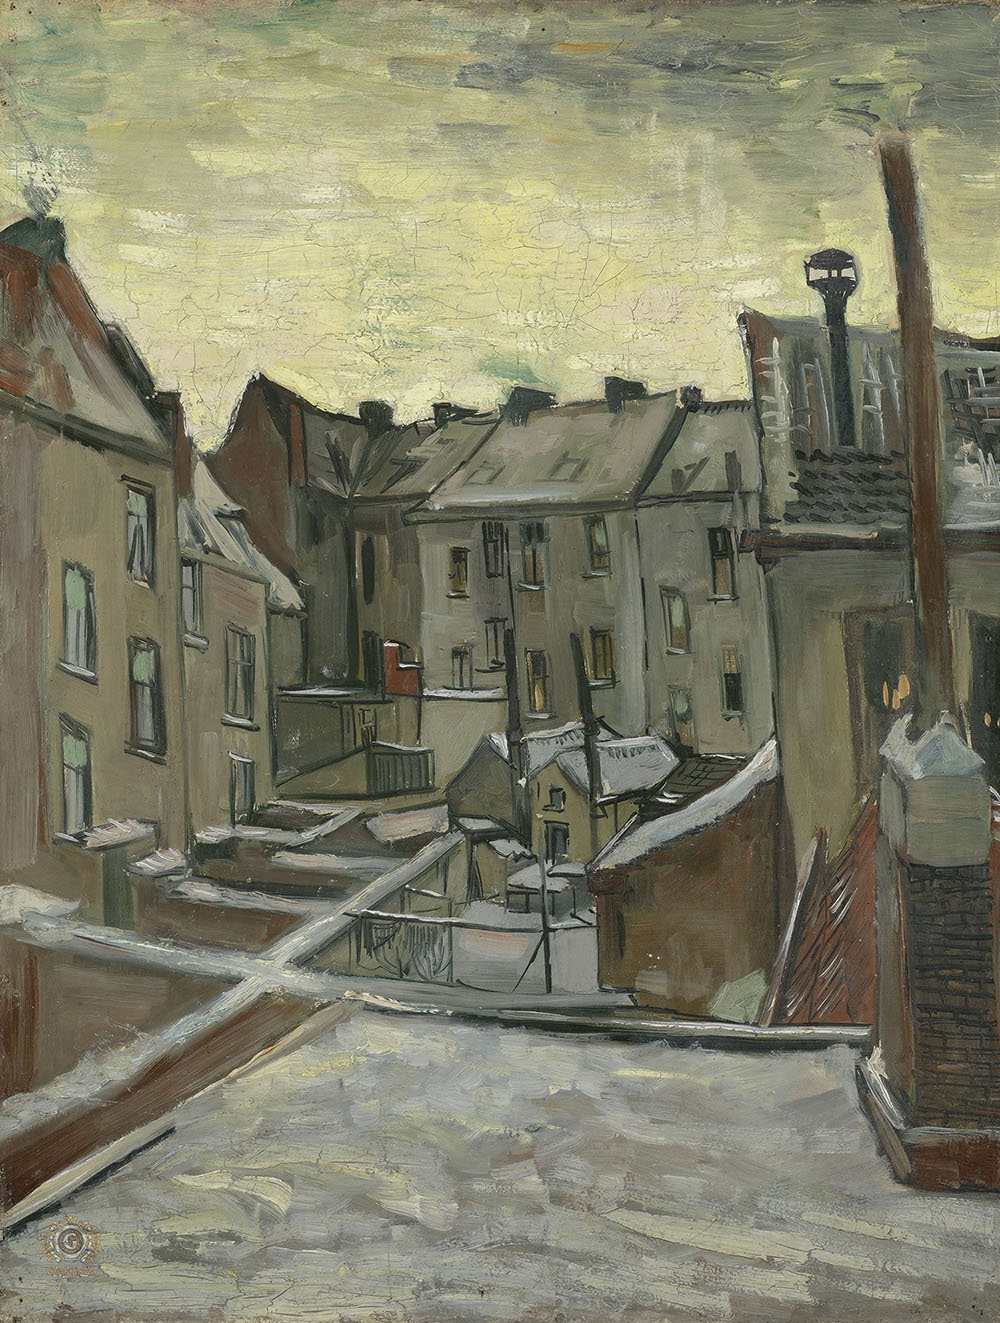 Винсент Ван Гог. "Задворки старых домов в Антверпене в снегу". 1885. Музей Ван Гога, Амстердам.